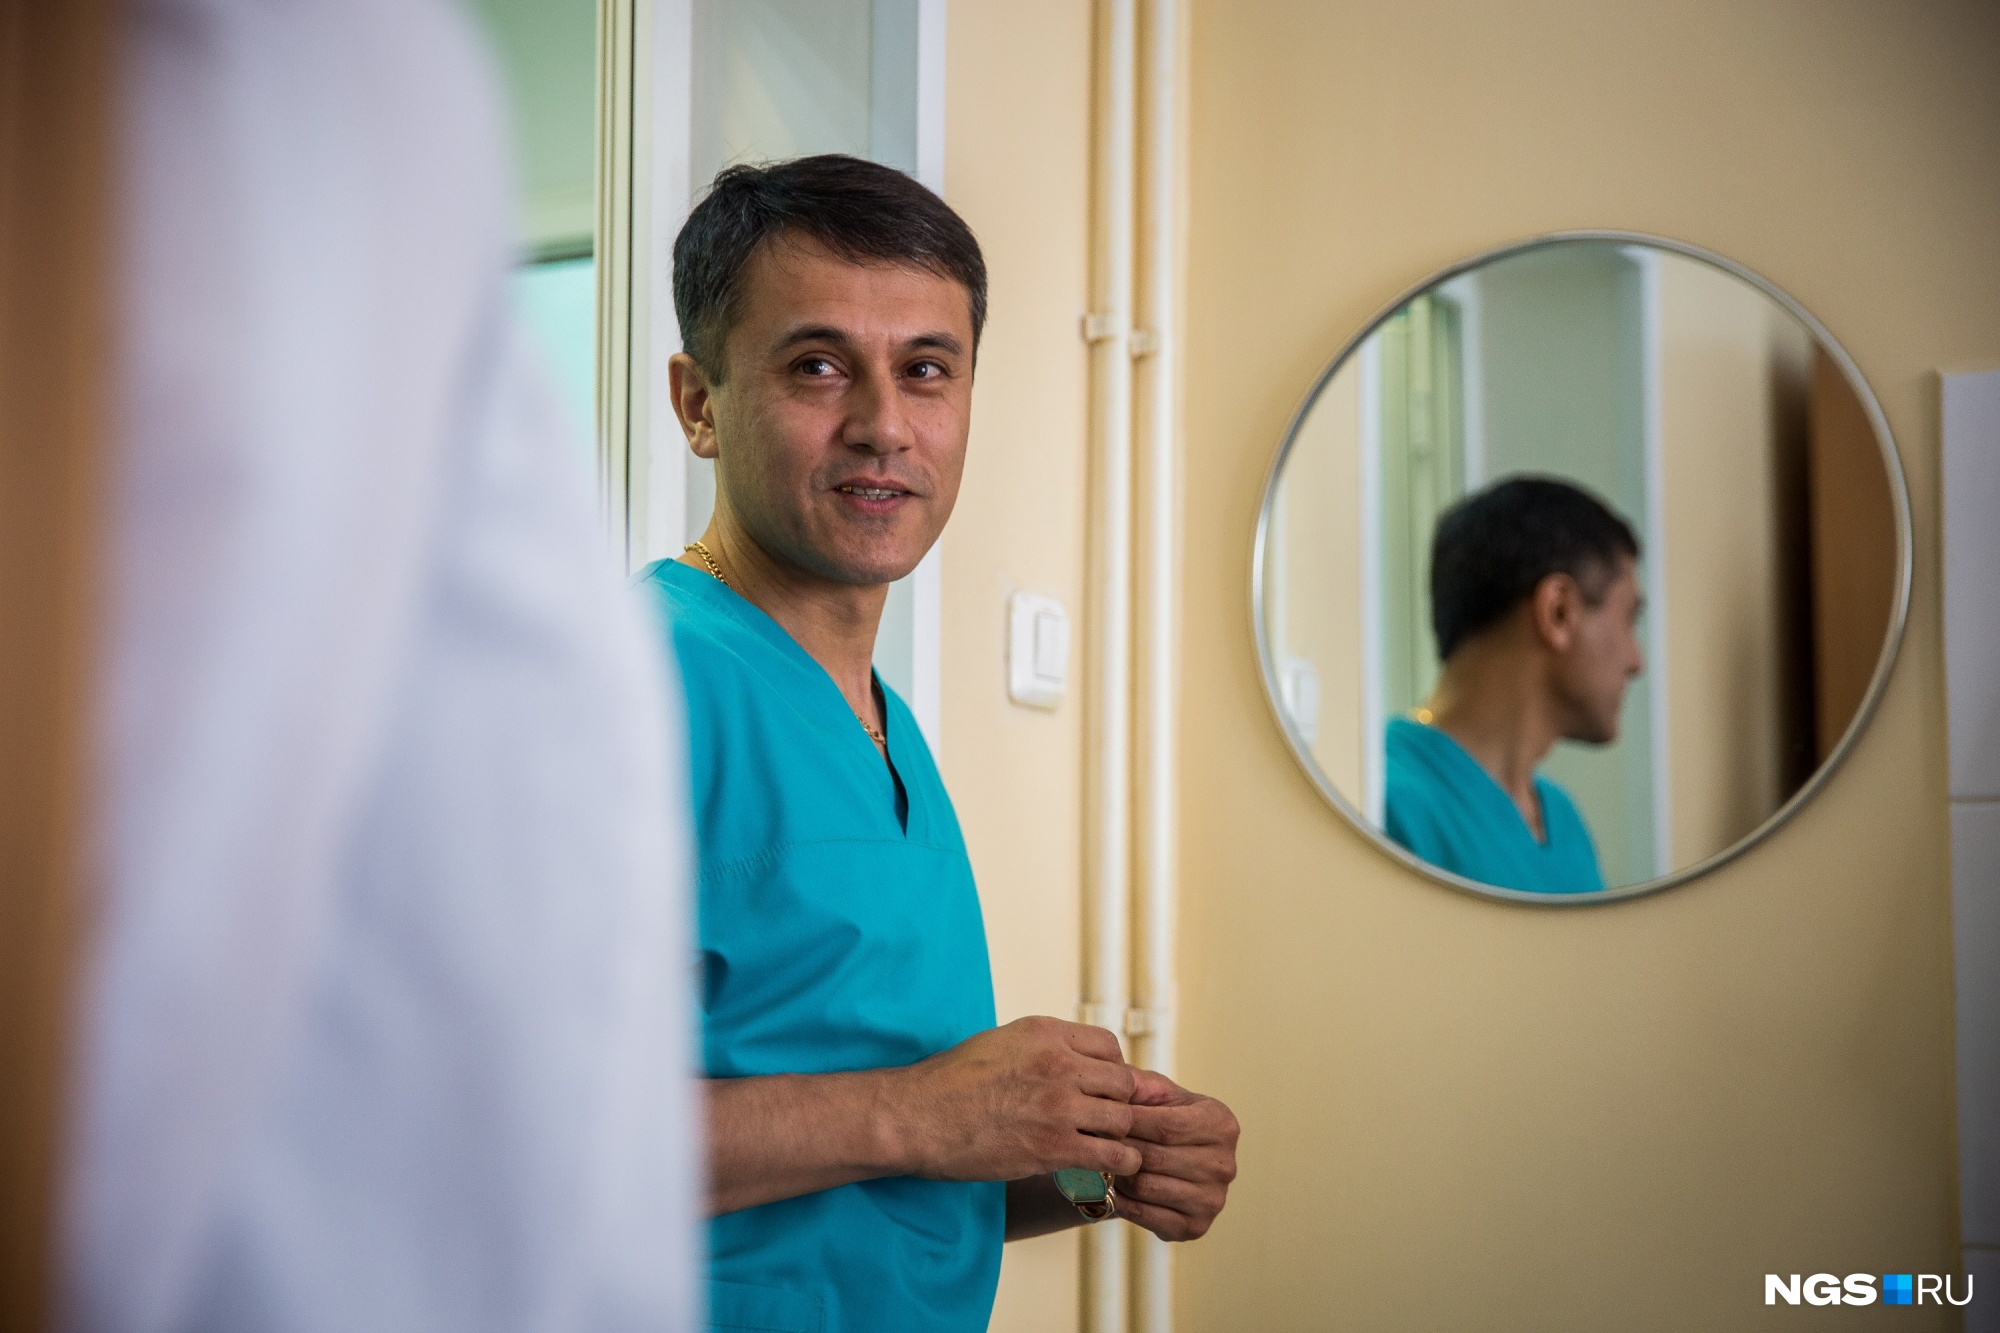 Заведующим стал известный хирург Рустам Мирсадиков — лауреат областного конкурса «Врач года». У него пять специальностей: хирургия, онкология, колопроктология, эндоскопия и организация здравоохранения